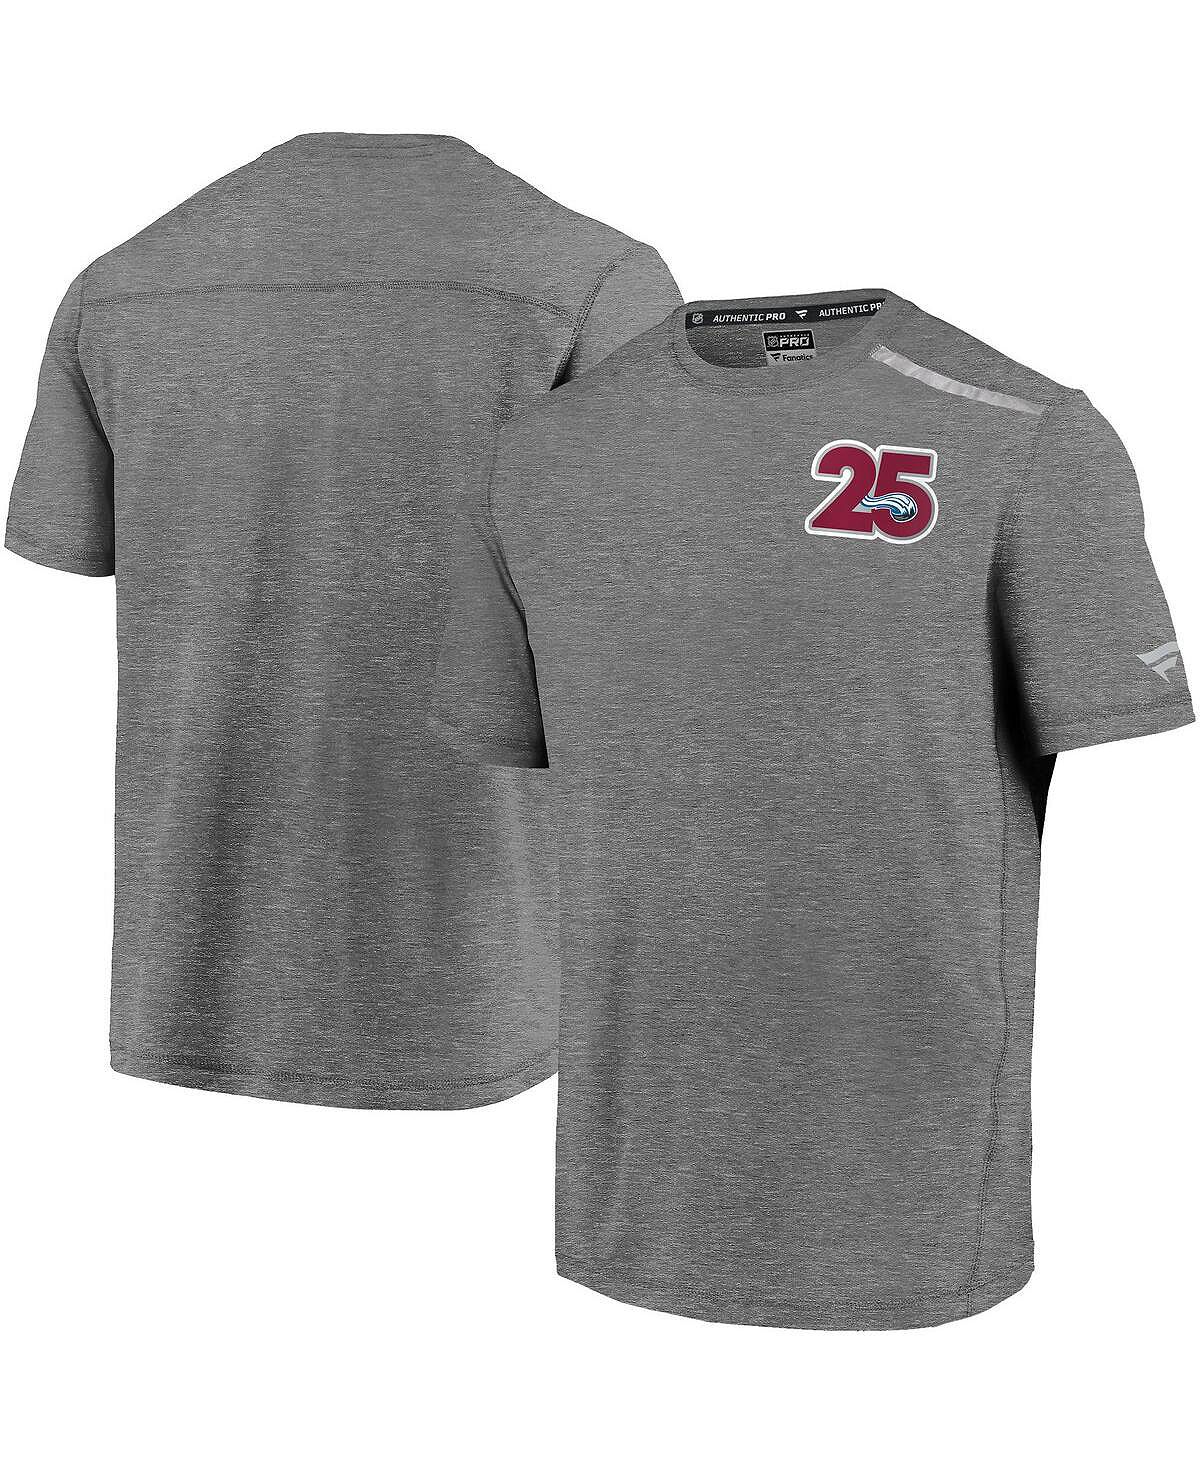 Мужская фирменная футболка с логотипом colorado avalanche 25th season в меланжевом цвете серого цвета Fanatics, мульти